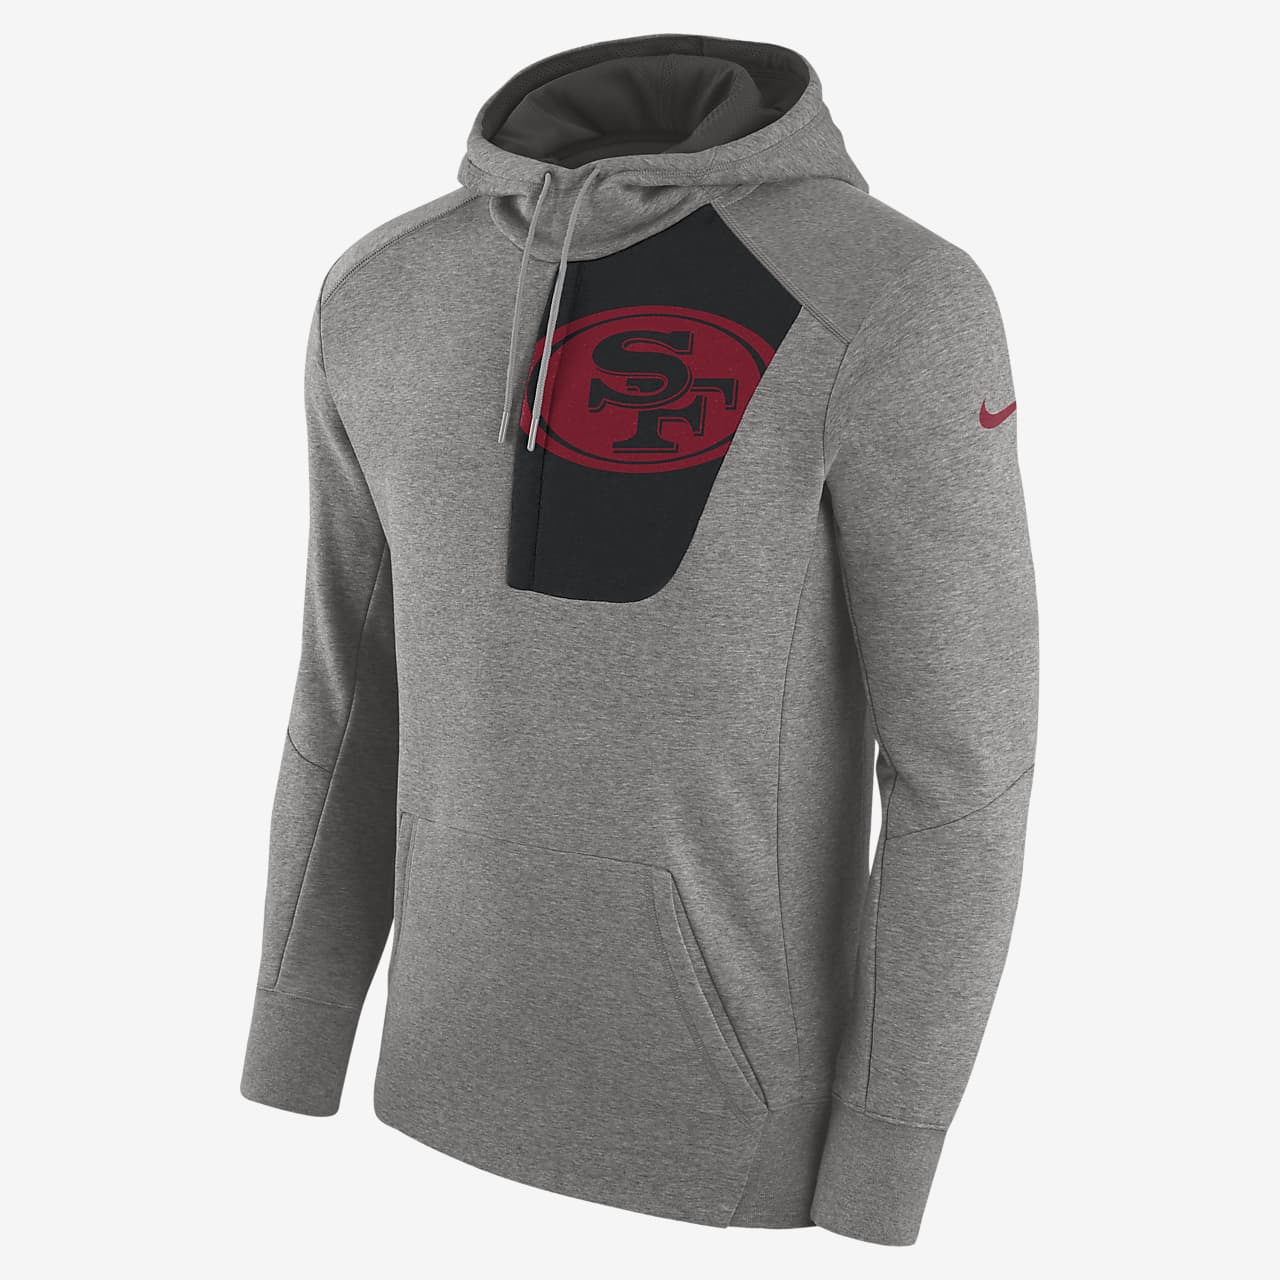 49ers nike zip up hoodie